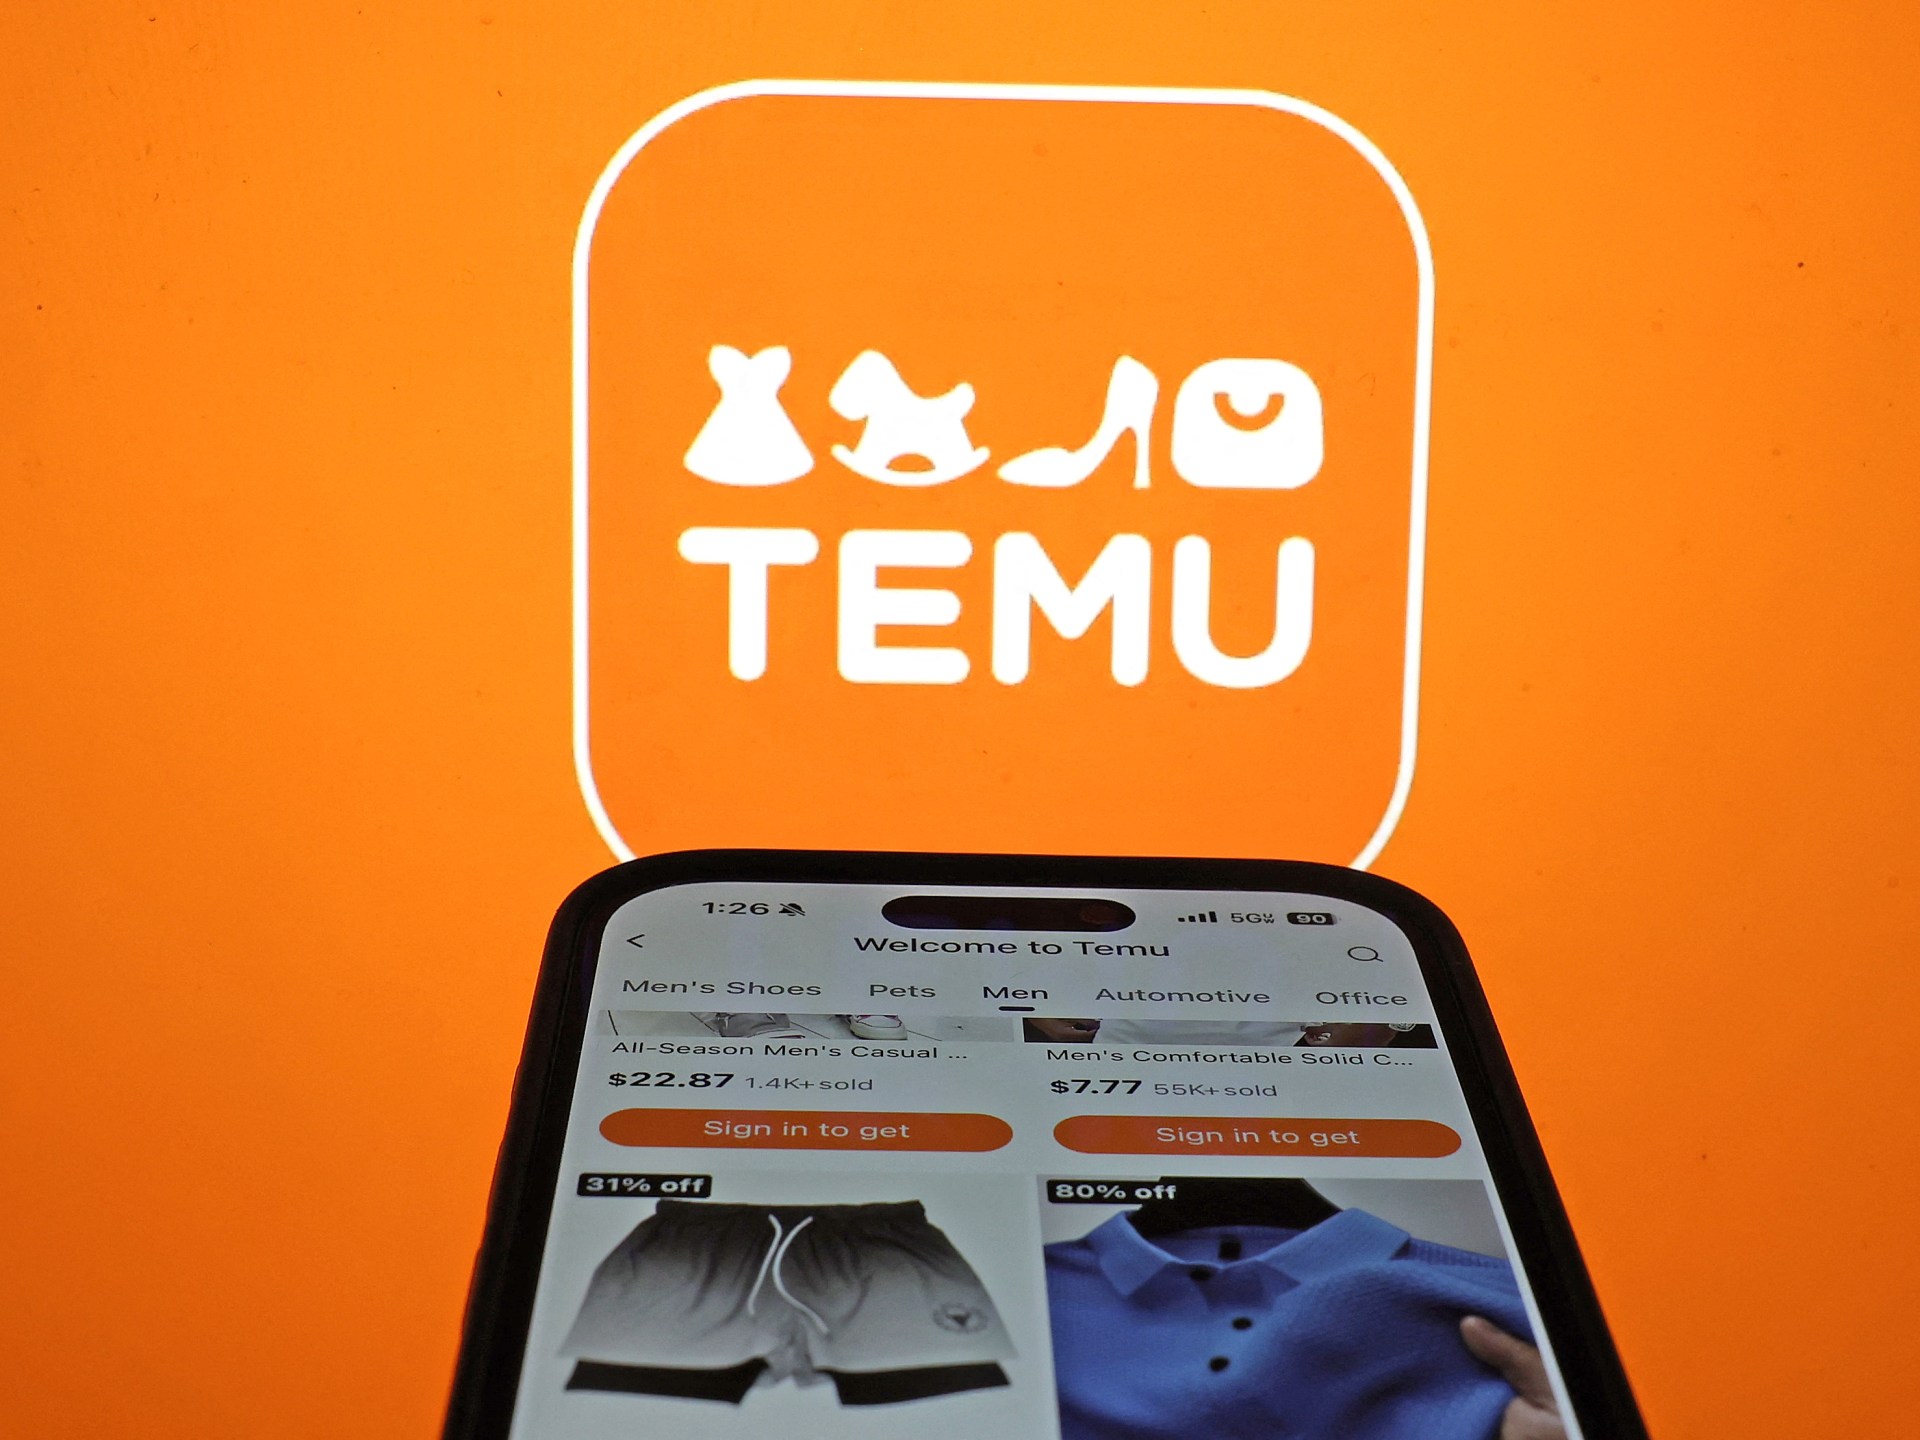 شركة “تيمو” الصينية للتجارة الإلكترونية تخضع لقانون الخدمات الرقمية الجديد | تكنولوجيا – البوكس نيوز